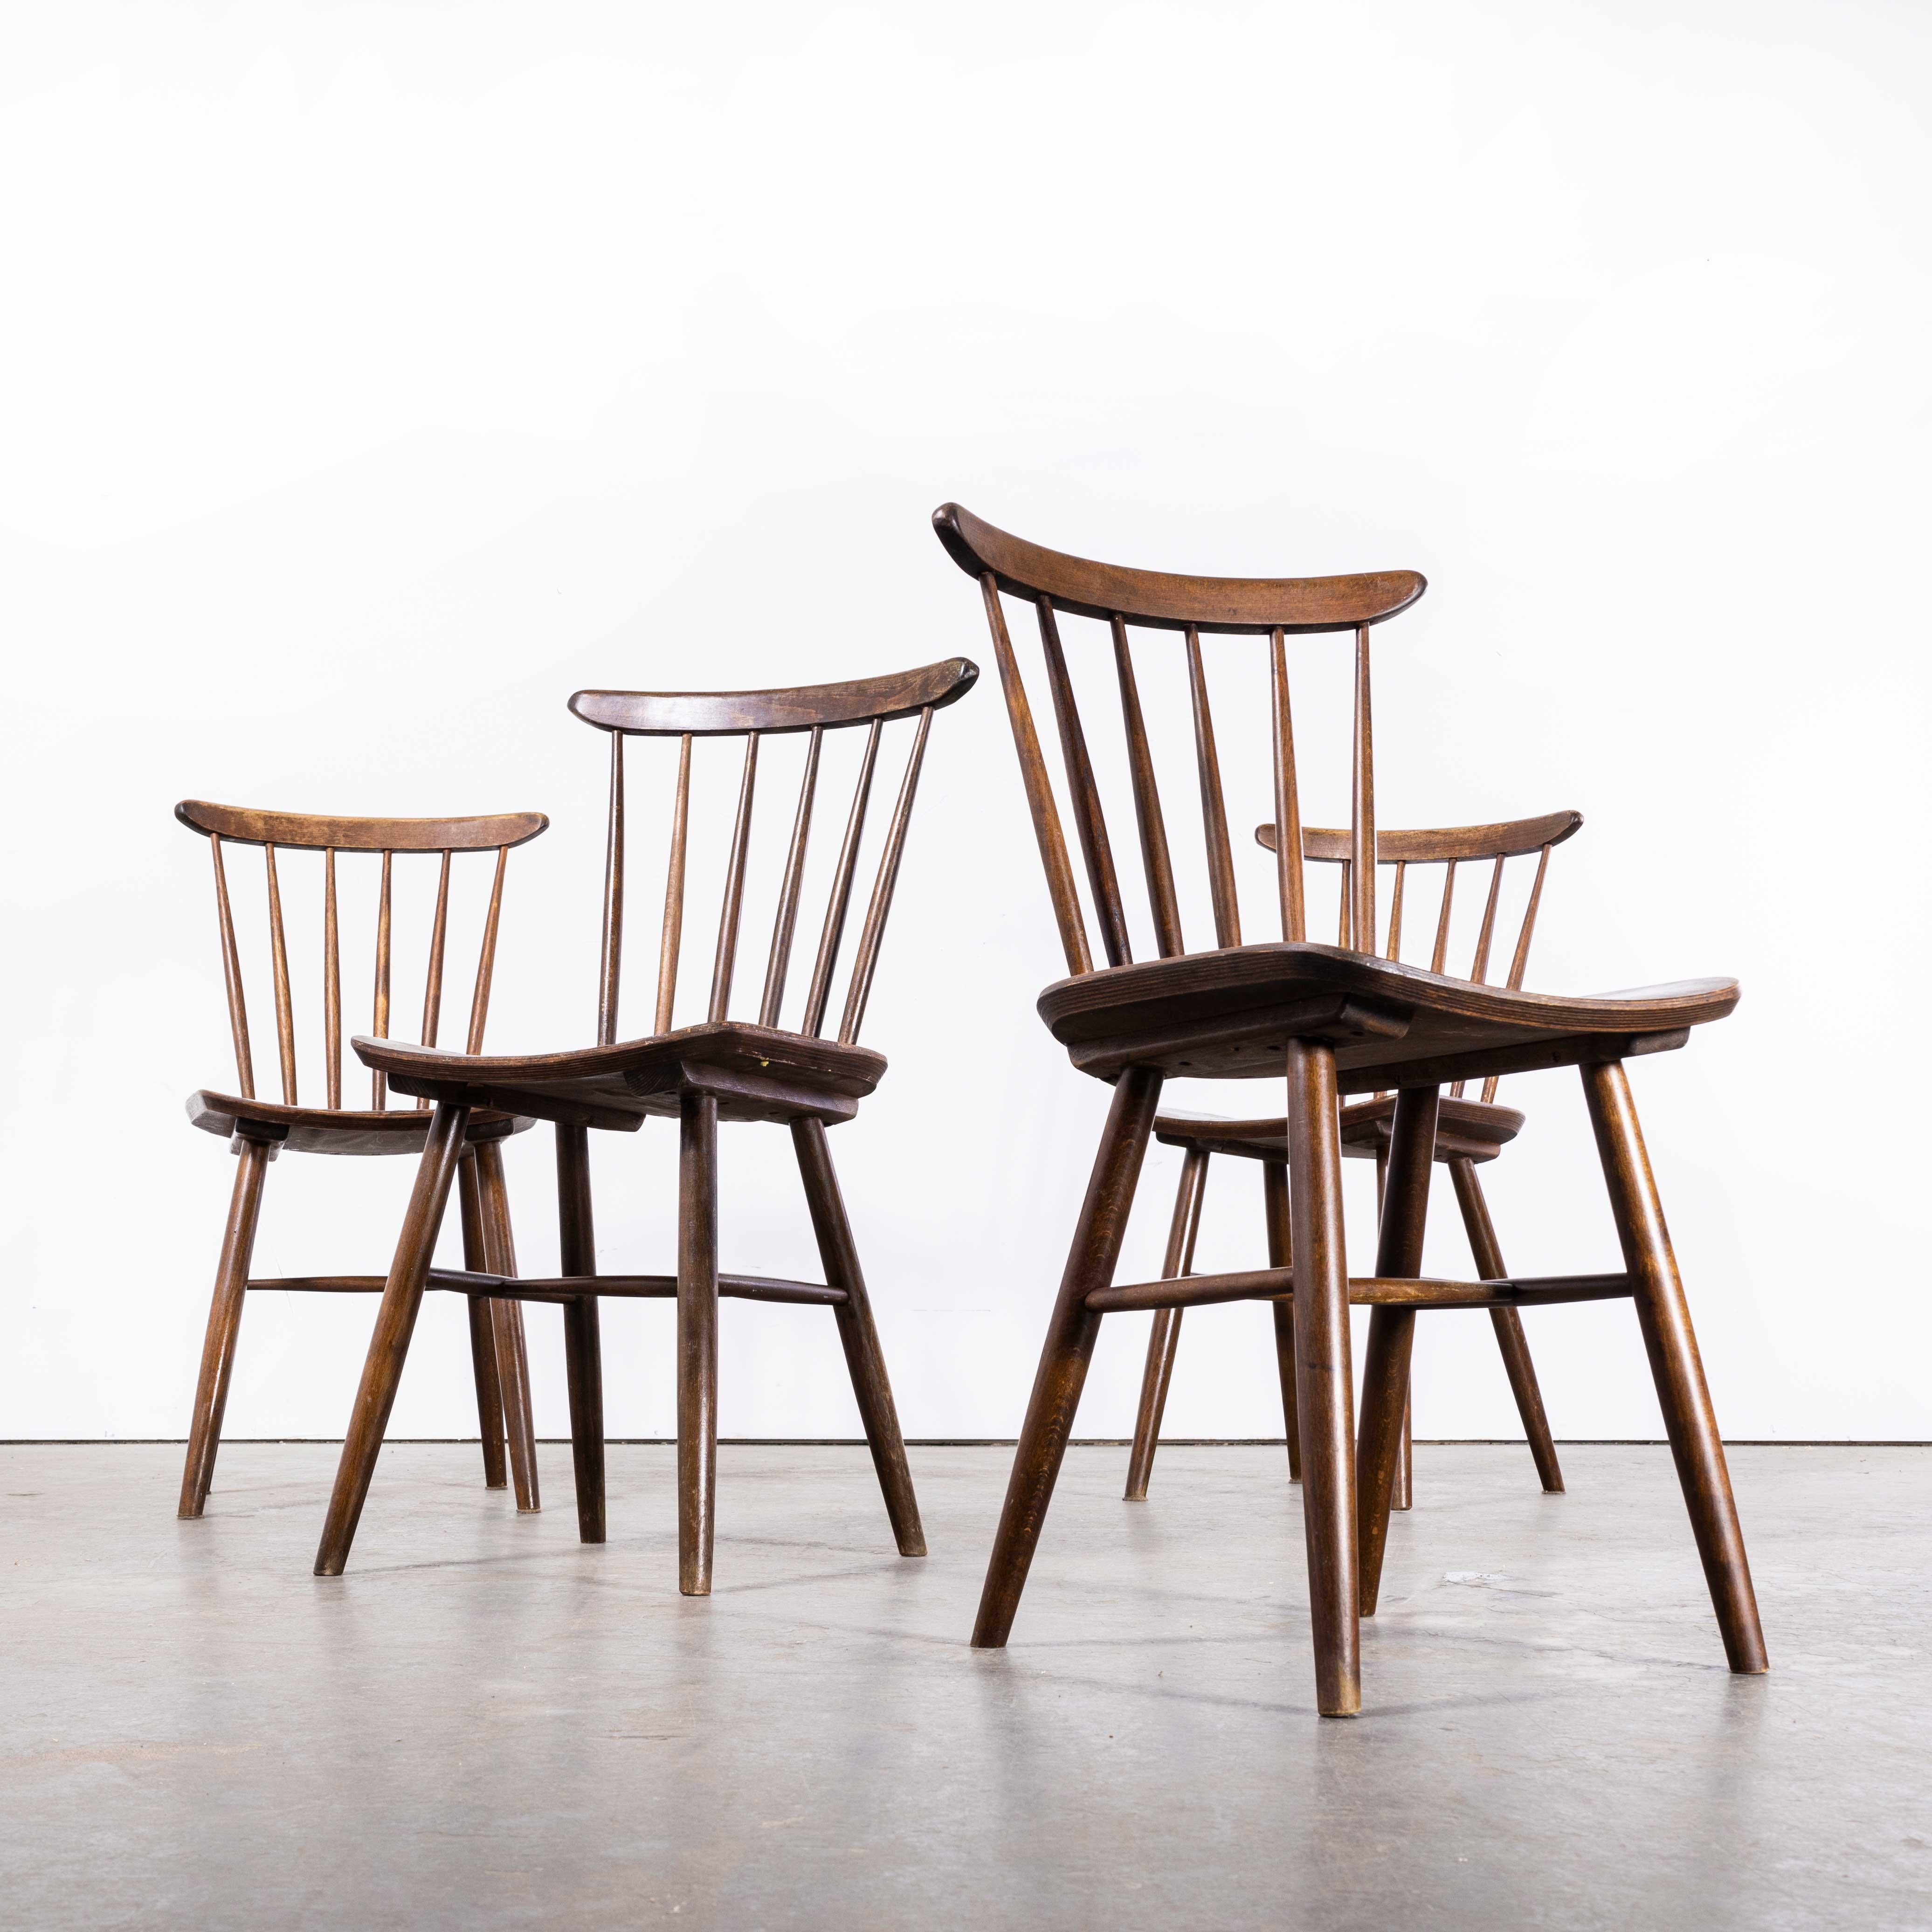 Czech 1950s Dark Walnut Stickback Chairs, Saddle Seat, by Ton, Set of Four